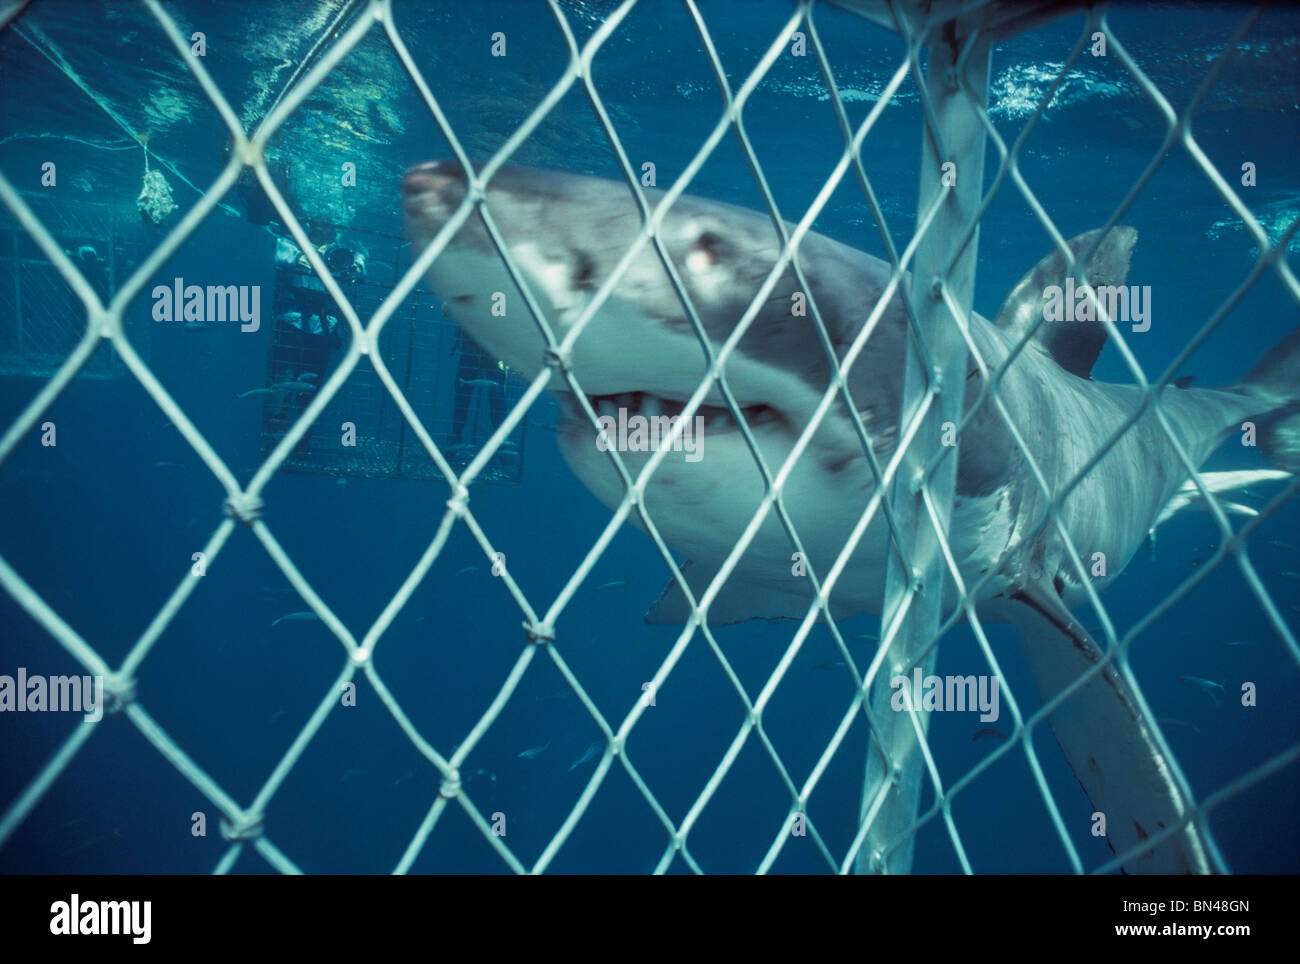 Divers tournage Grand requin blanc (Carcharodon carcharias) approche de cage de protection, dangereux de corail, Australie du Sud Banque D'Images